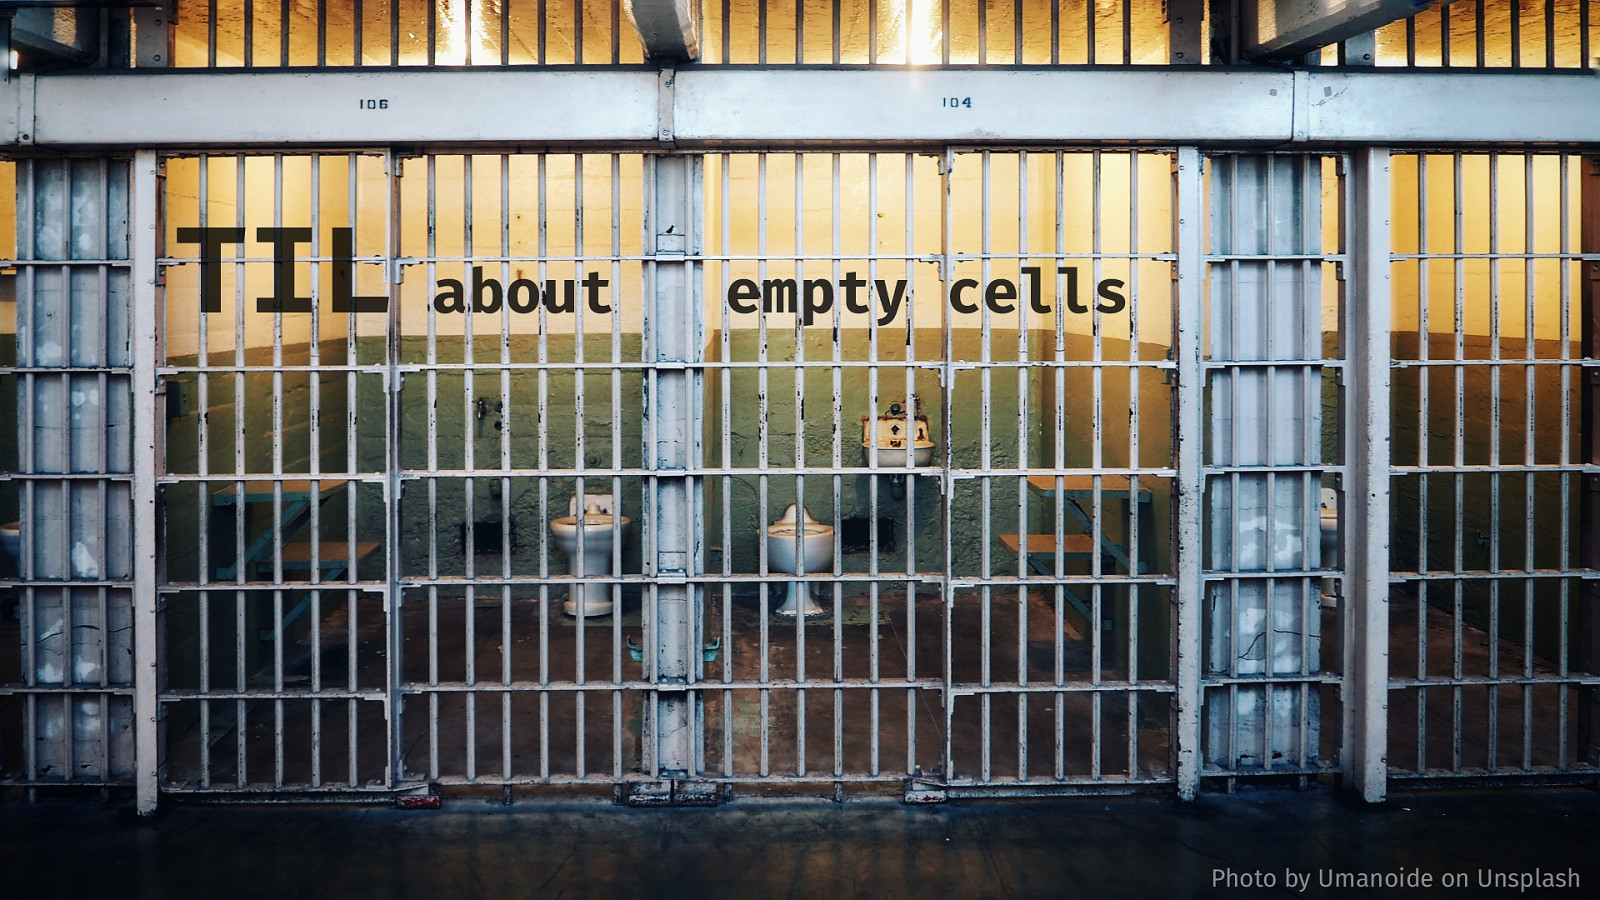 TIL about empty cells